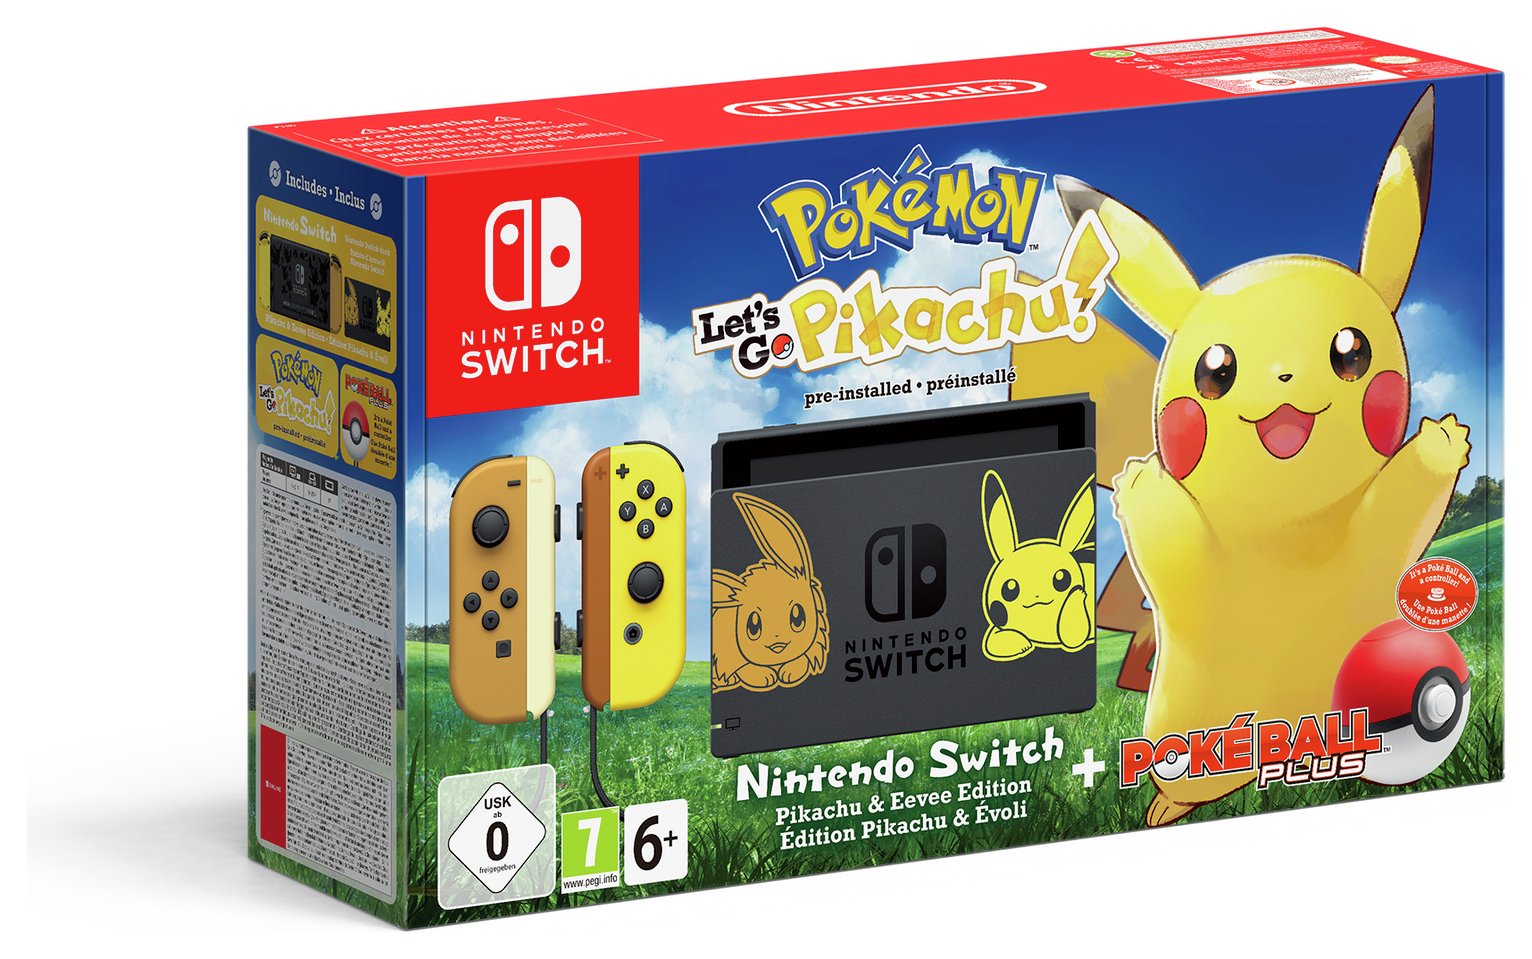 Nintendo Switch Console & Lets Go Pikachu Bundle review